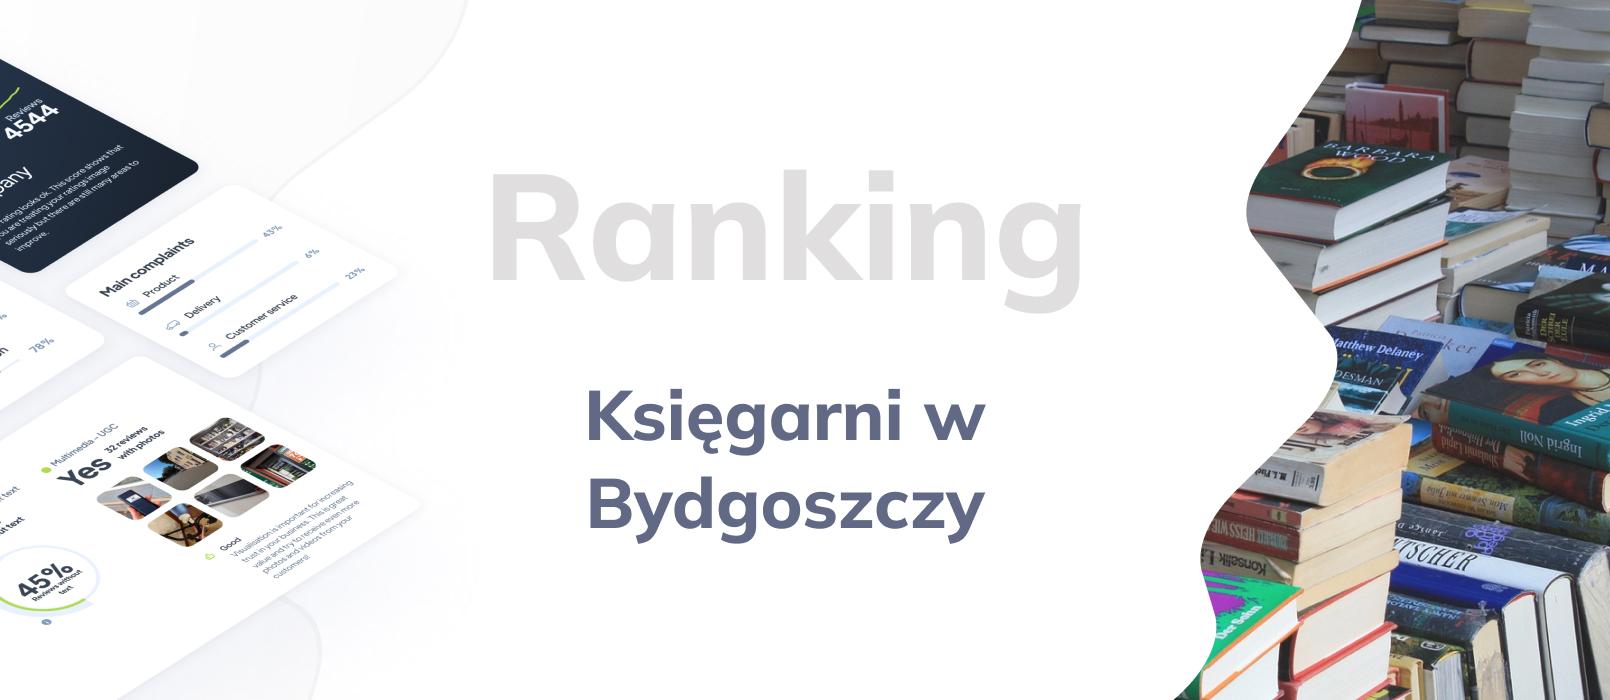 Księgarnie w Bydgoszczy - ranking TOP 10